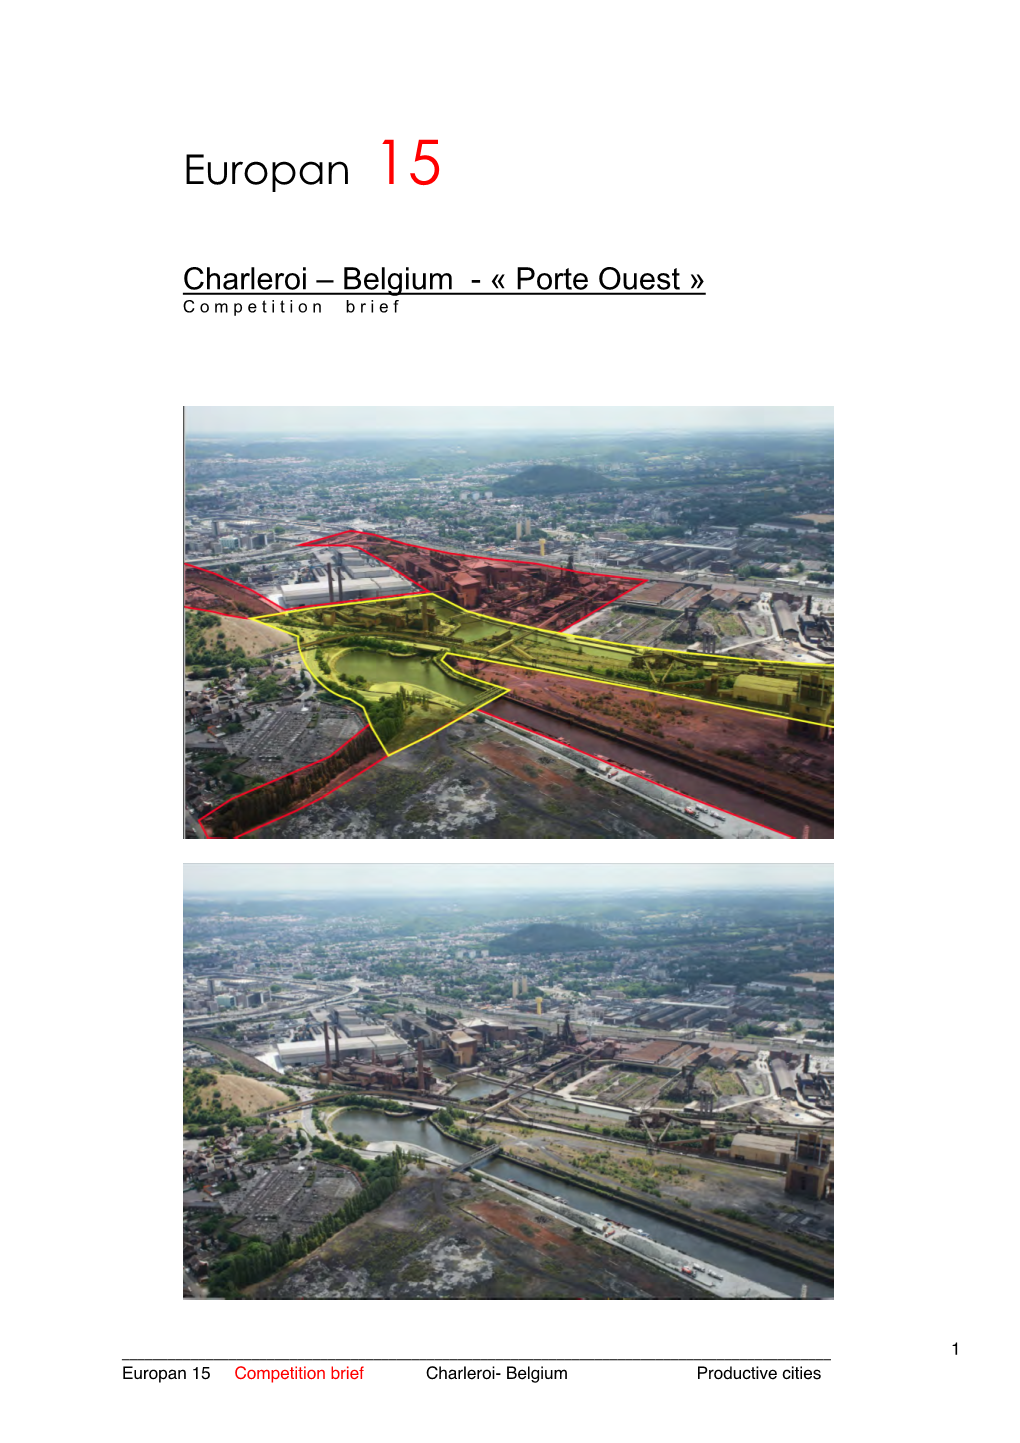 Charleroi – Belgium - « Porte Ouest » C O M P E T I T I O N B R I E F